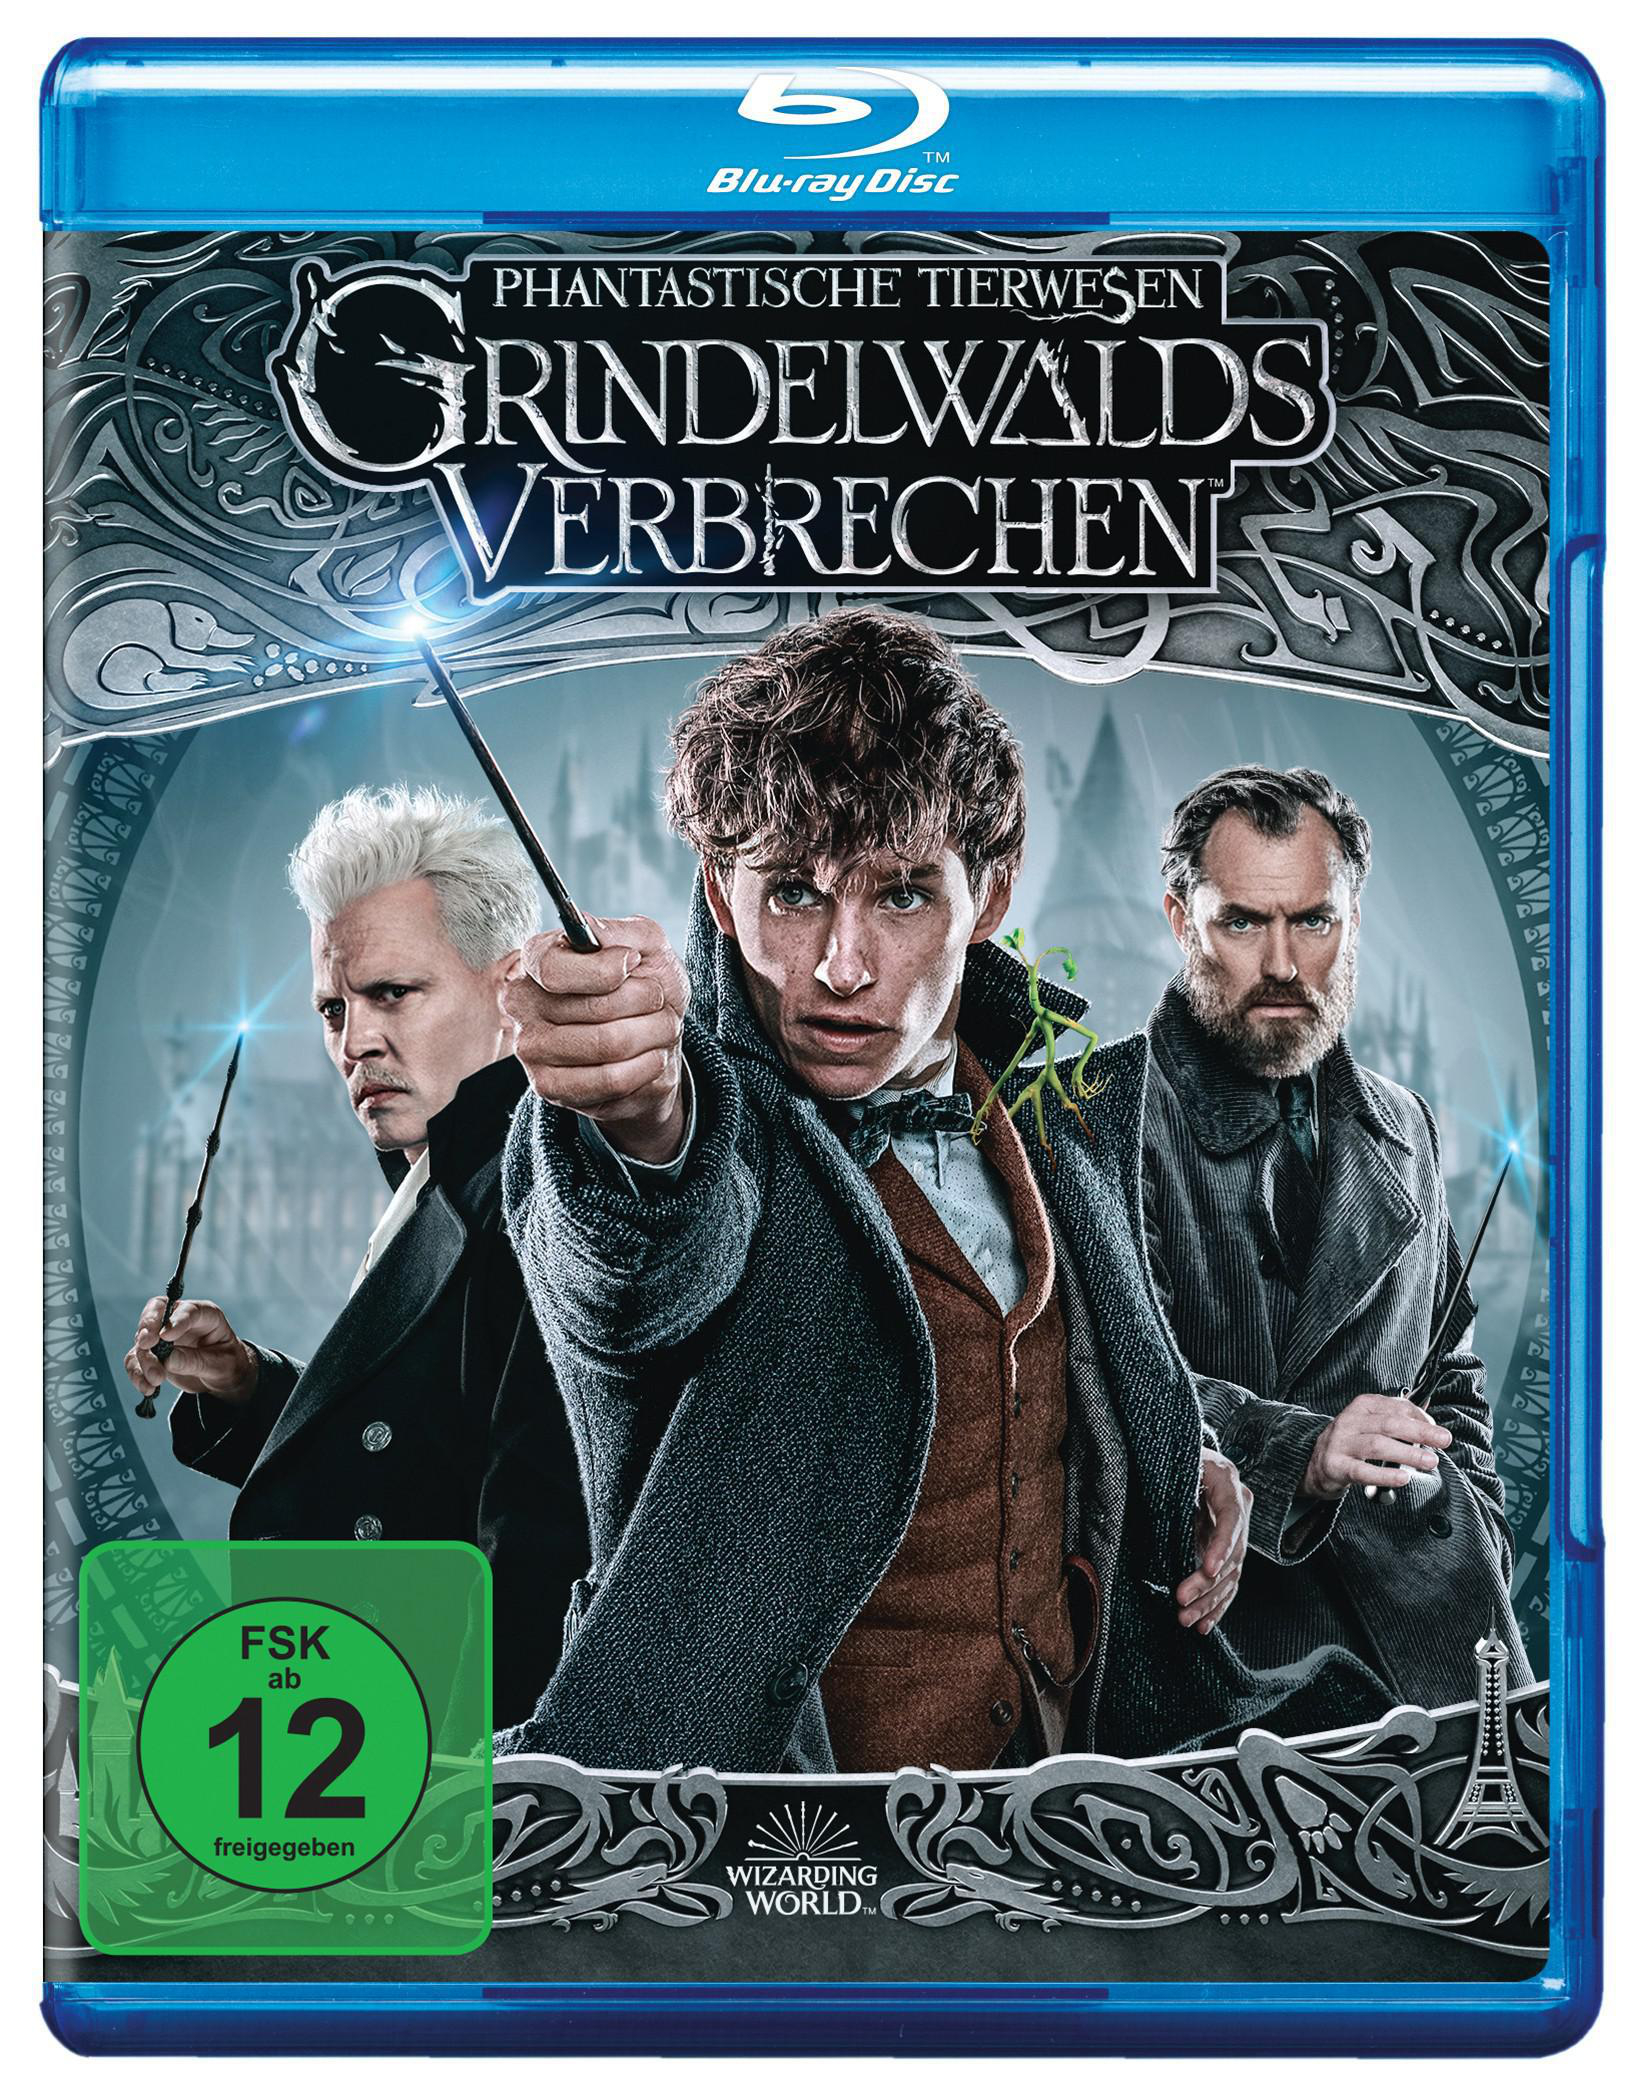 Phantastische Tierwesen Grindelwalds Kinofassung Blu-ray + Verbrechen Extended Cut